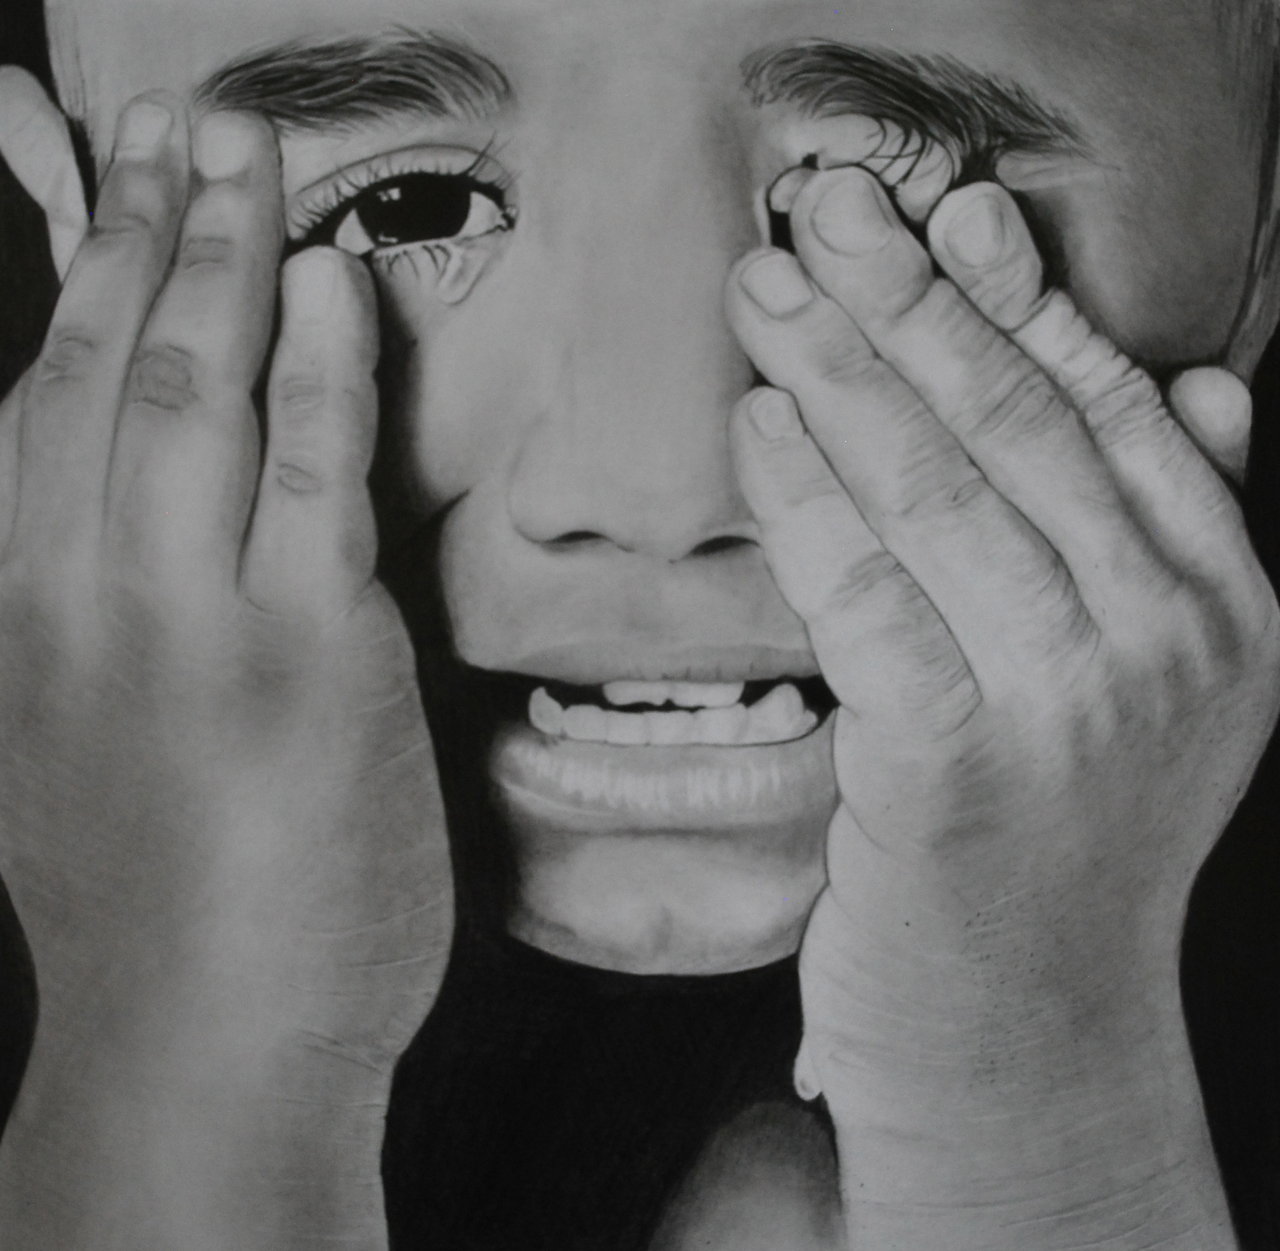 crying boy by paul shanghai d54n4vz आंसुओं में मिले एंटीबॉडी से बन सकेगी आंखों को ड्राईनेस से बचाने की दवा